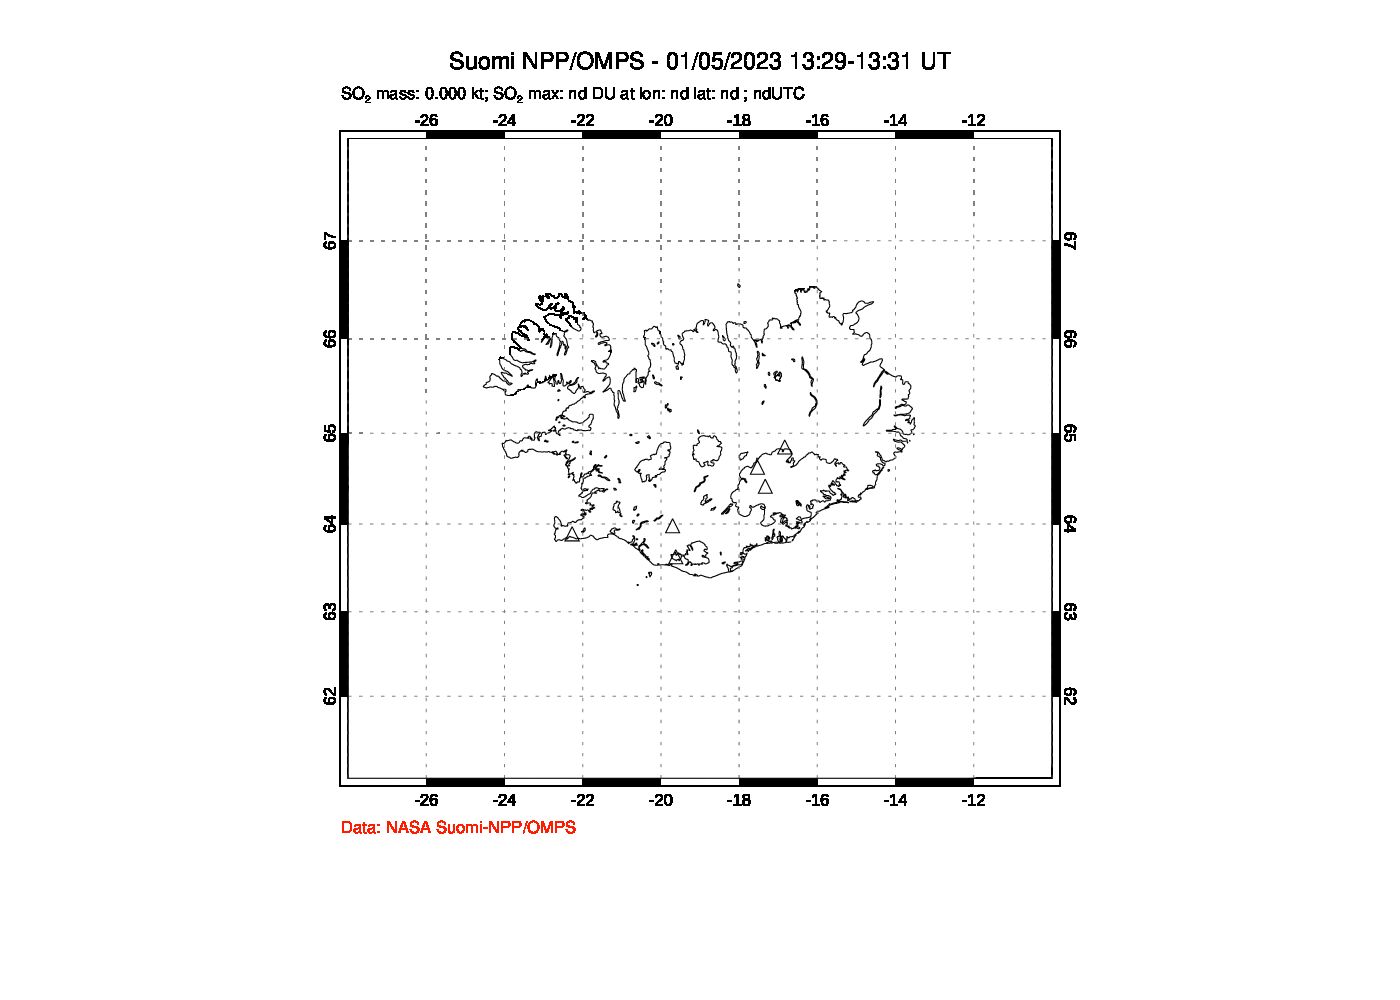 A sulfur dioxide image over Iceland on Jan 05, 2023.